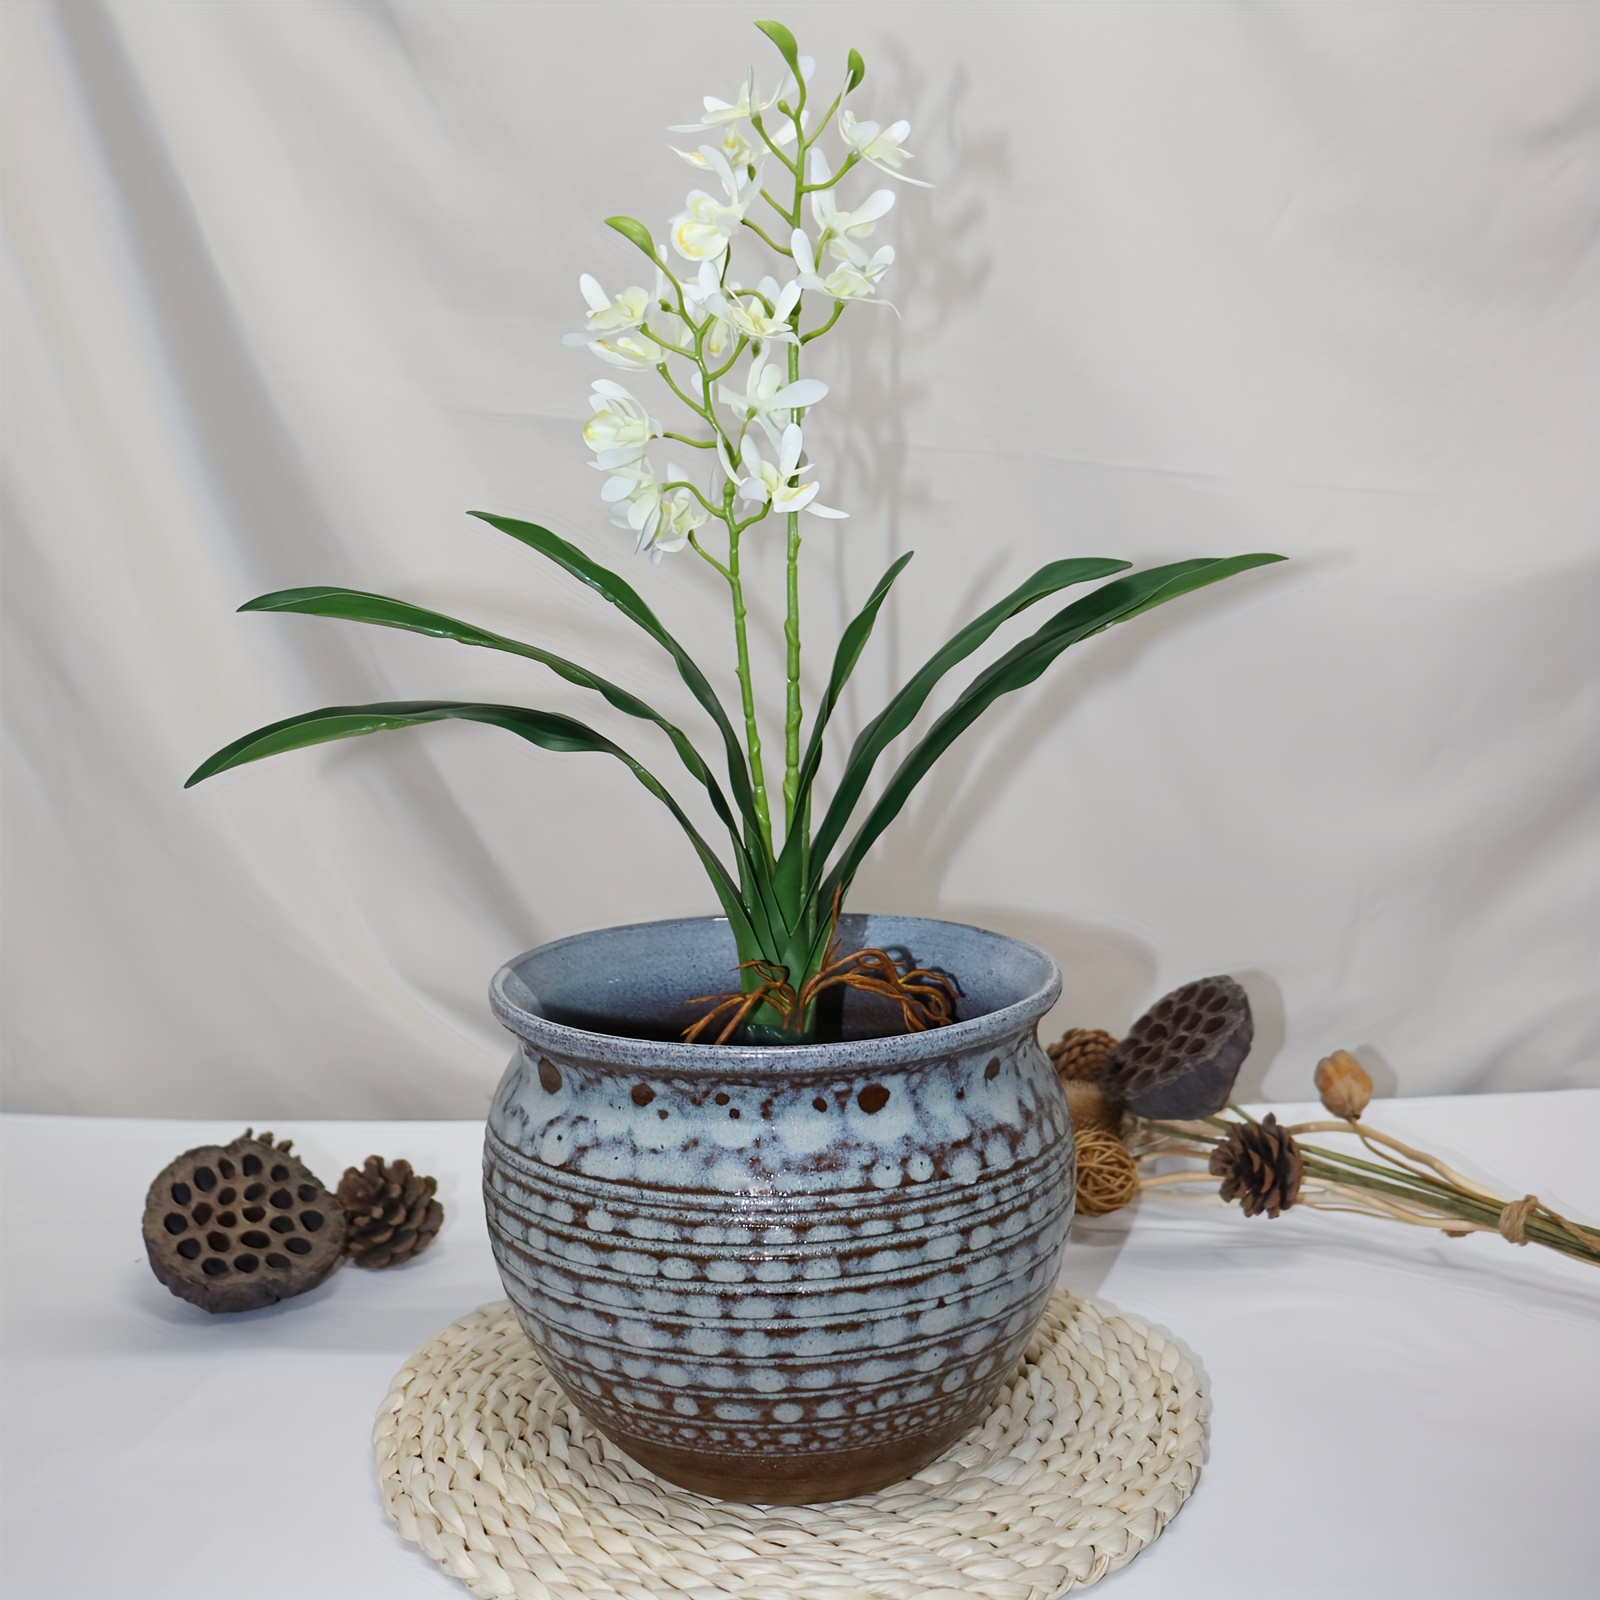 2-Tone Ceramic Planter